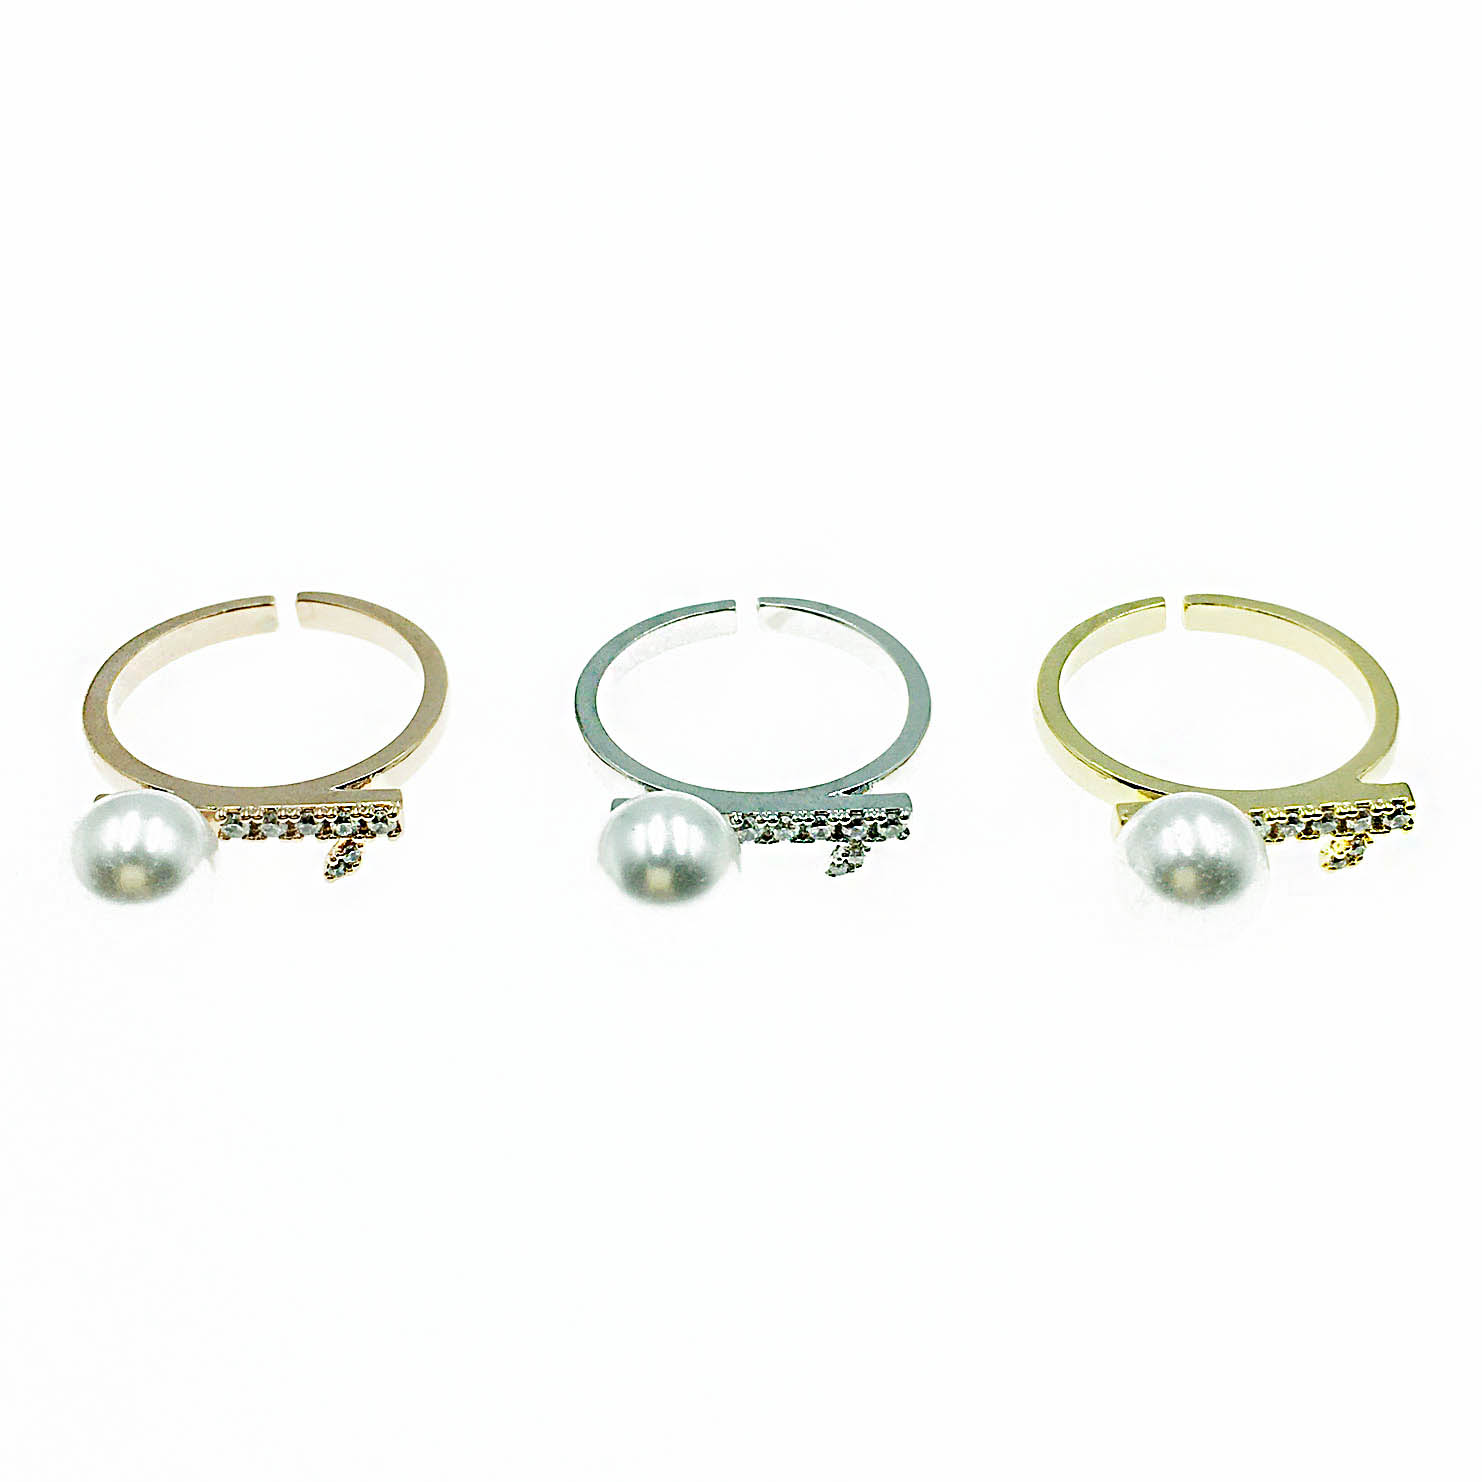 韓國 925純銀 珍珠 水鑽 造型 明星款飾品 三色 可調式 戒指